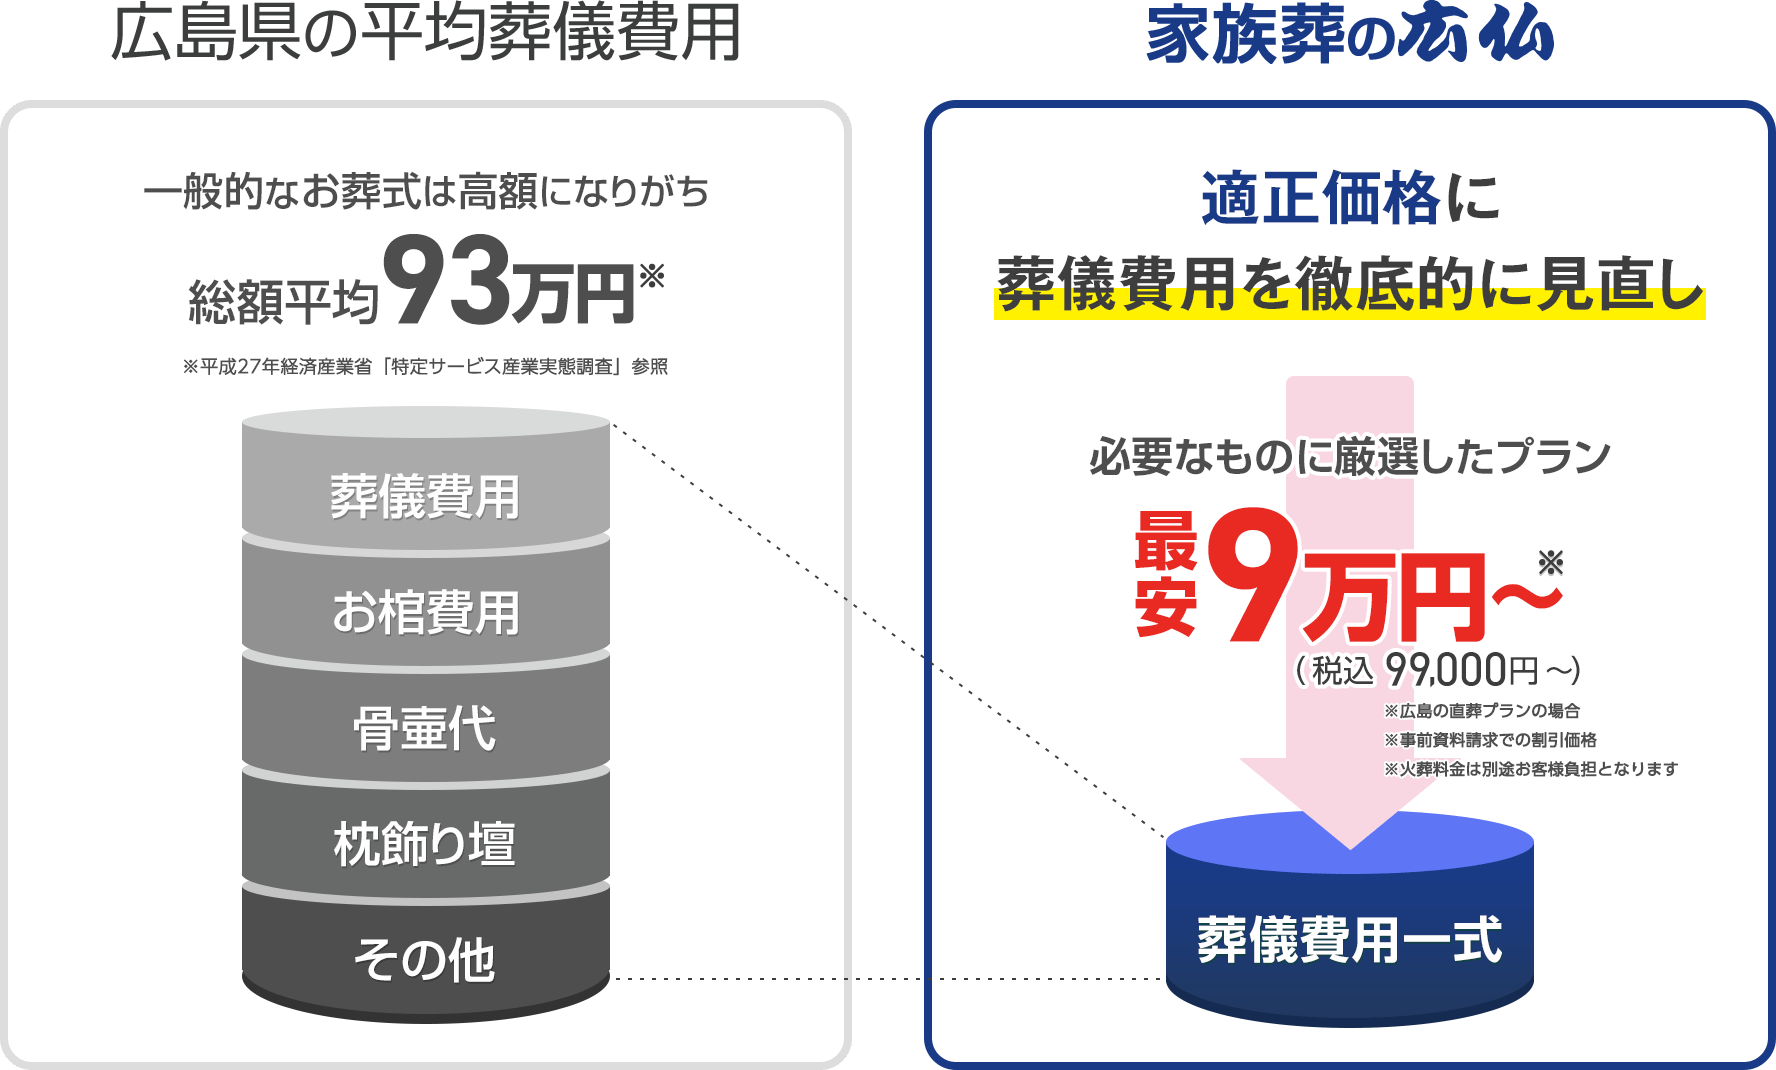 東広島市で葬儀・葬式が税込9.9万円できる家族葬の広仏 広島県の平均葬儀費用との比較